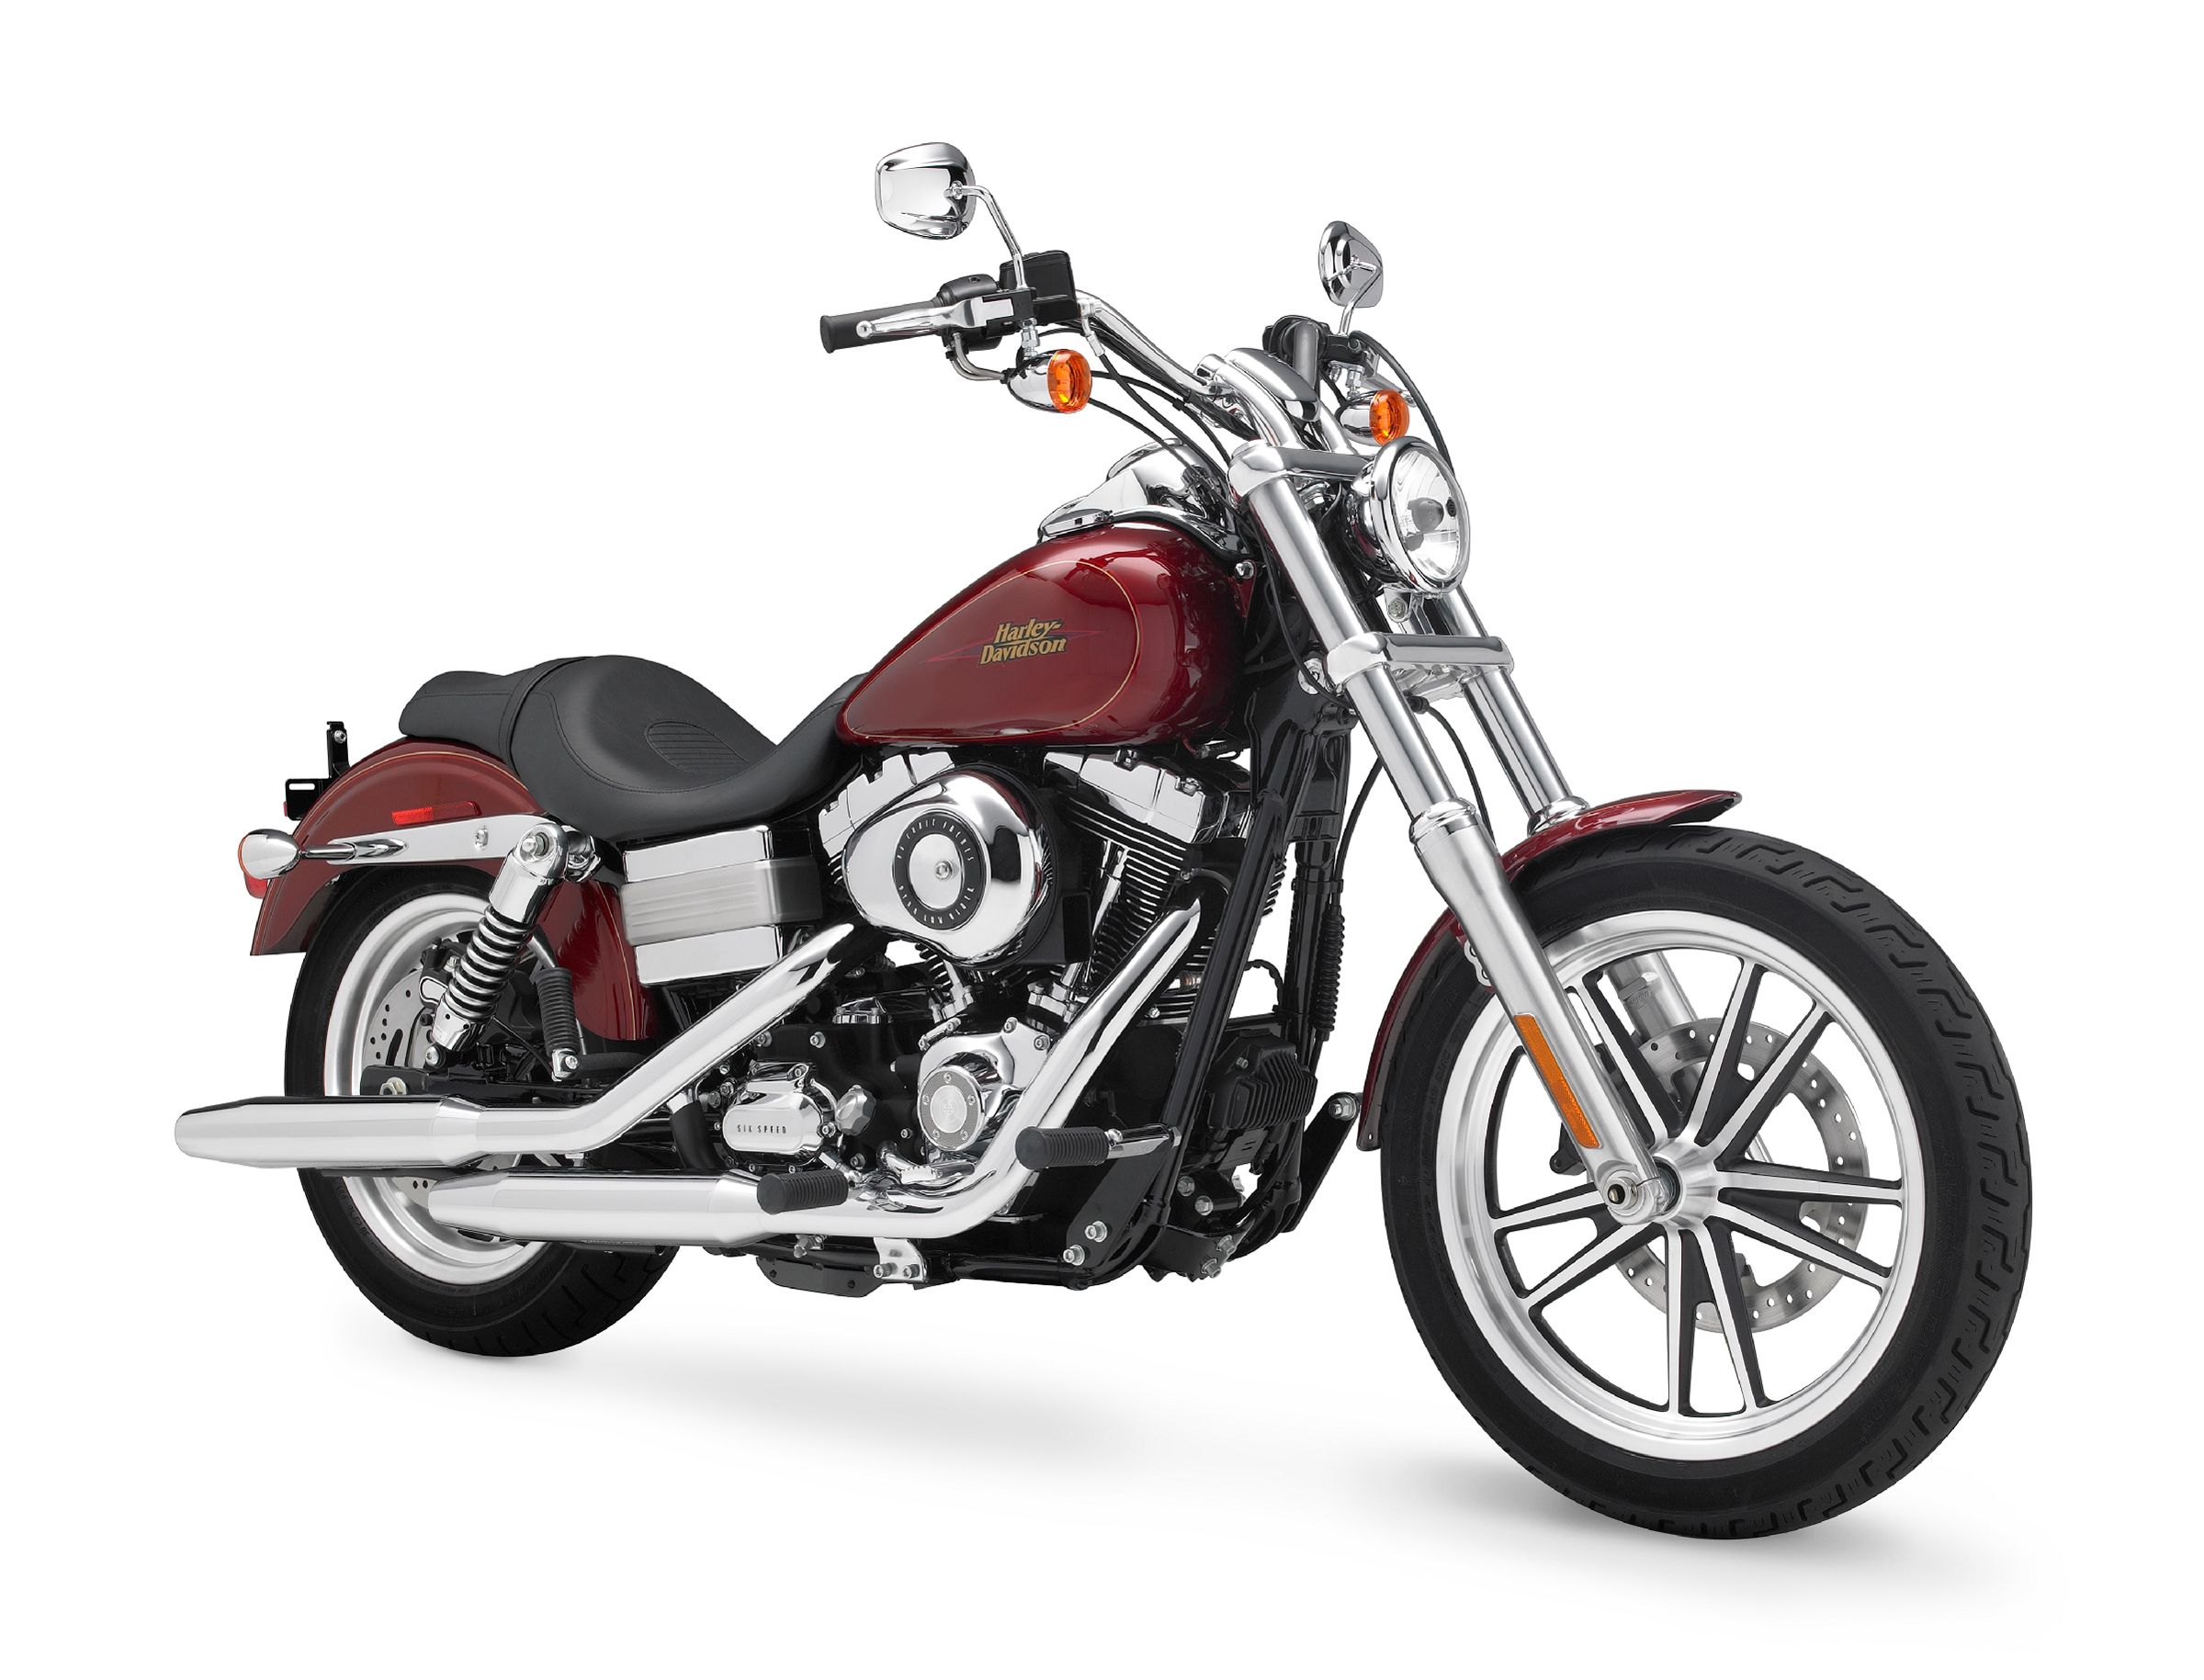  2009 Harley-Davidson Dyna Low Rider